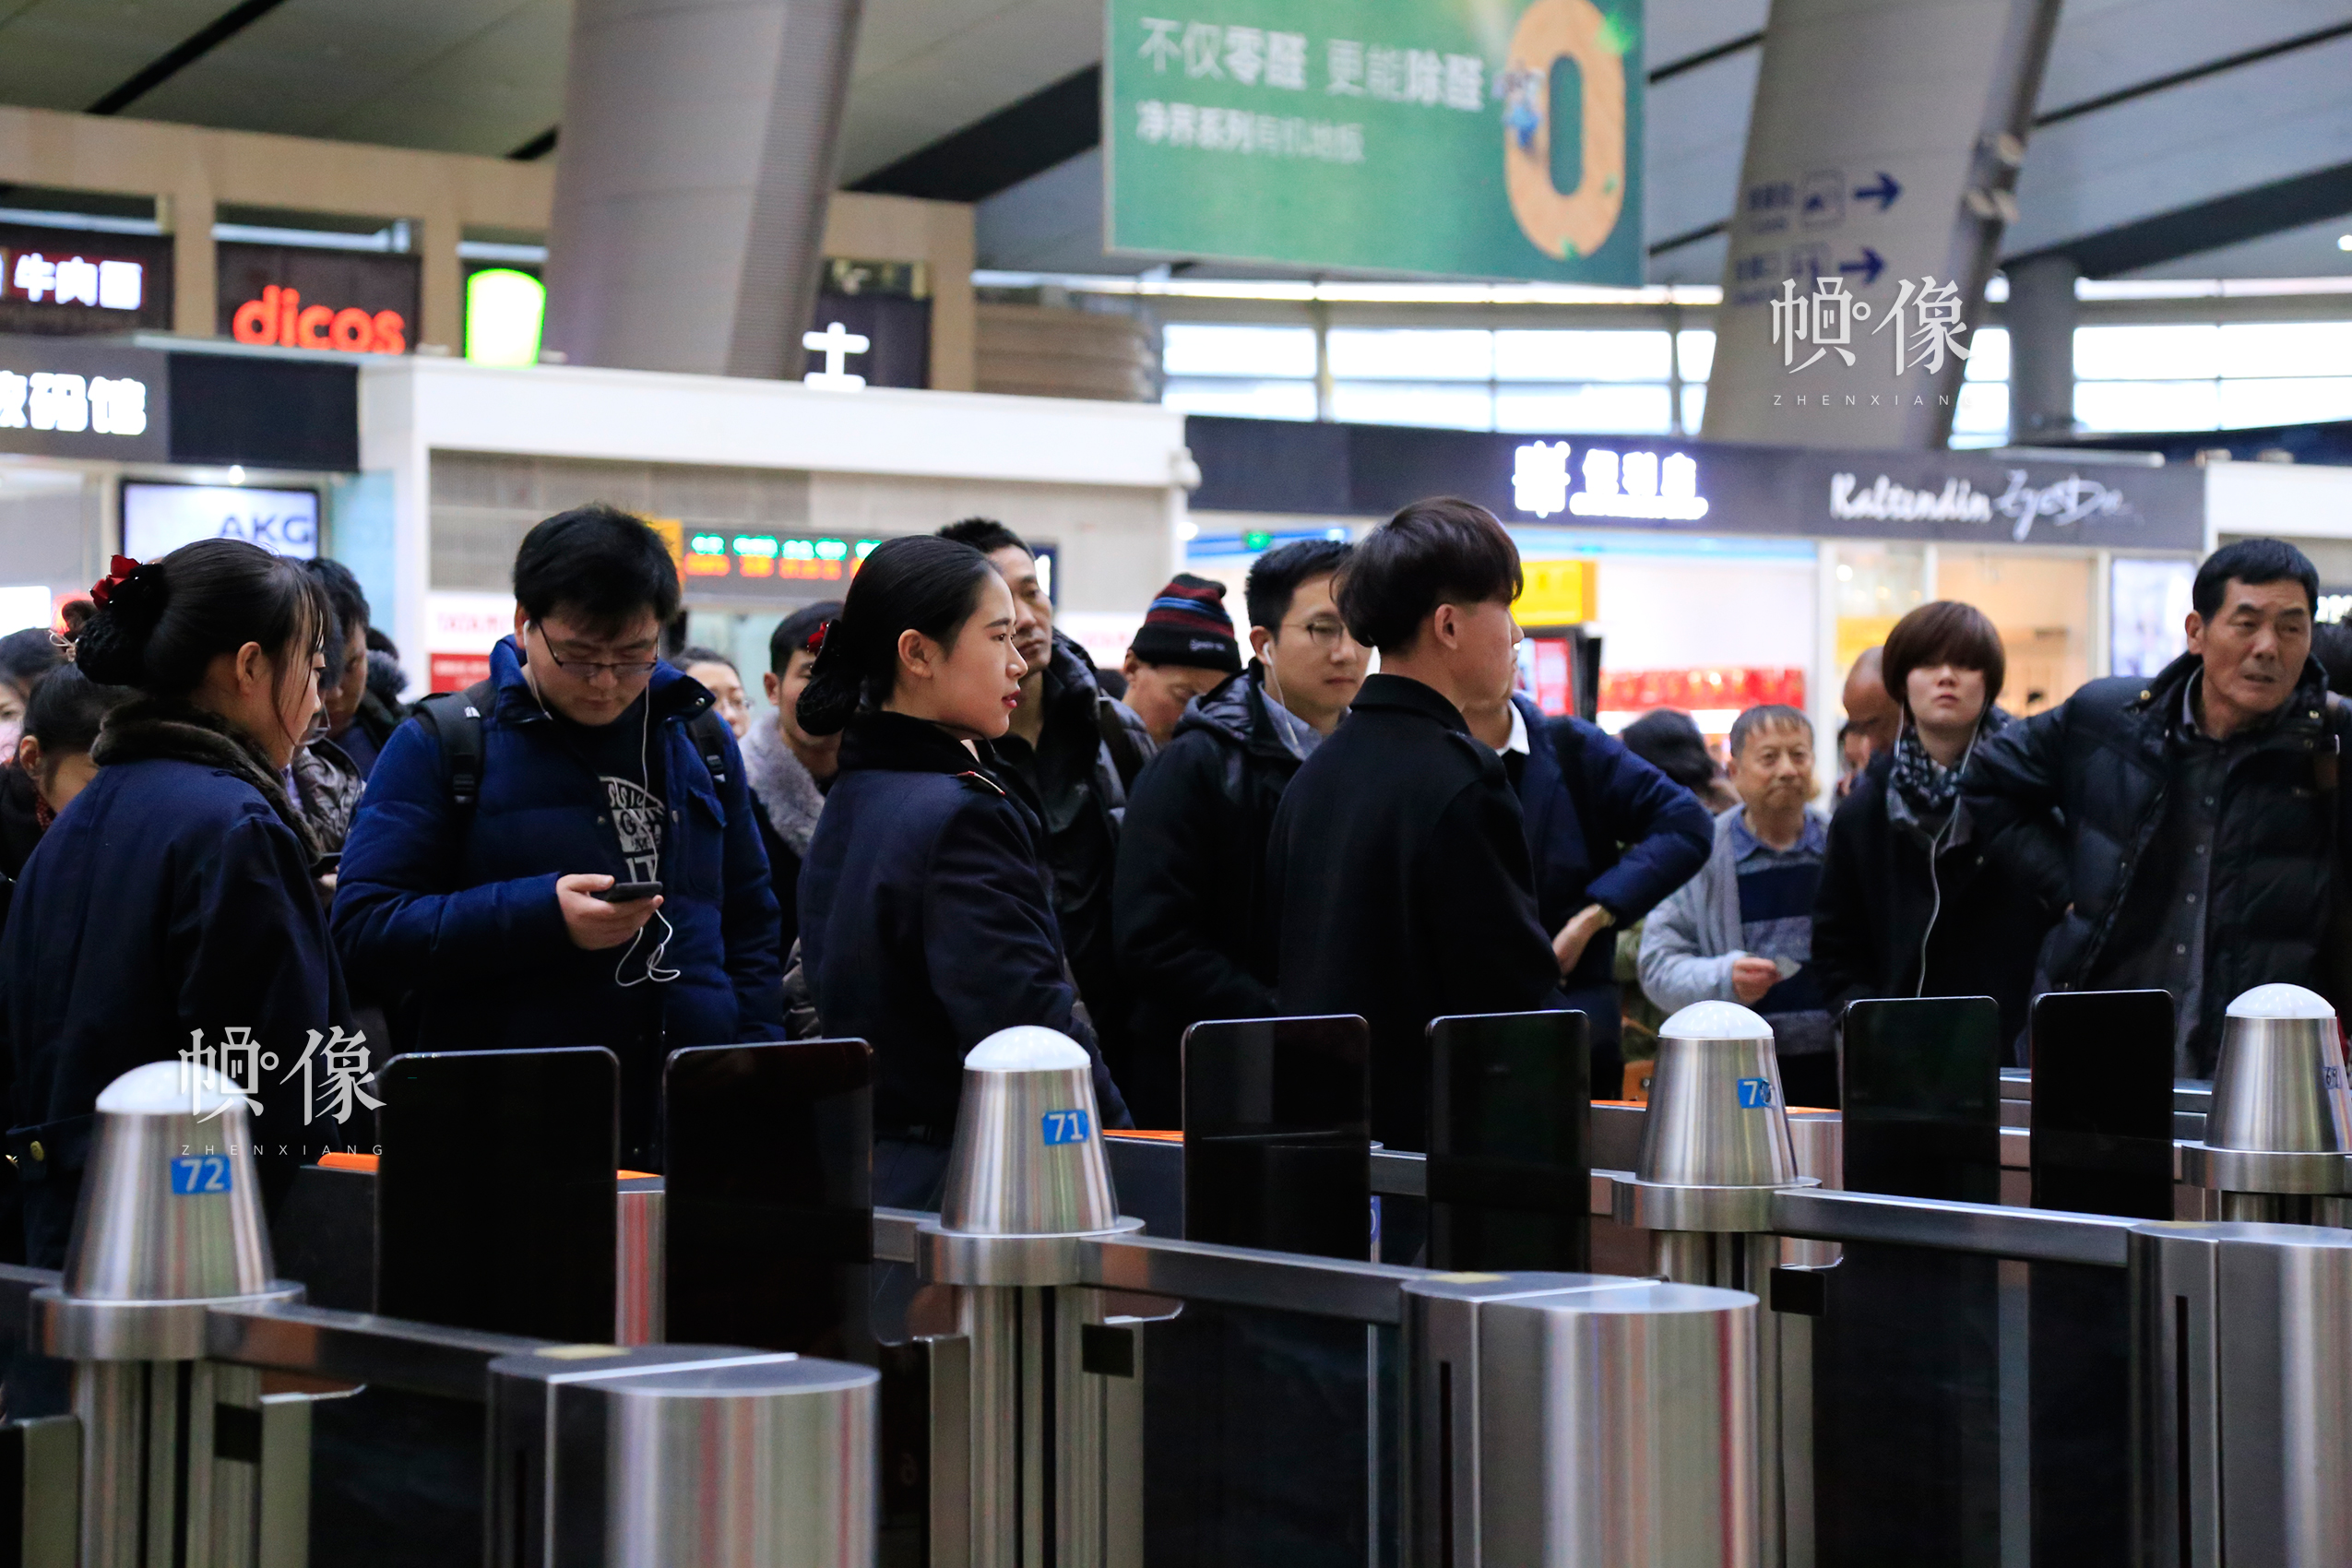 北京南站某检票口前，旅客排队等待检票进站。中国网实习记者 韩依 摄